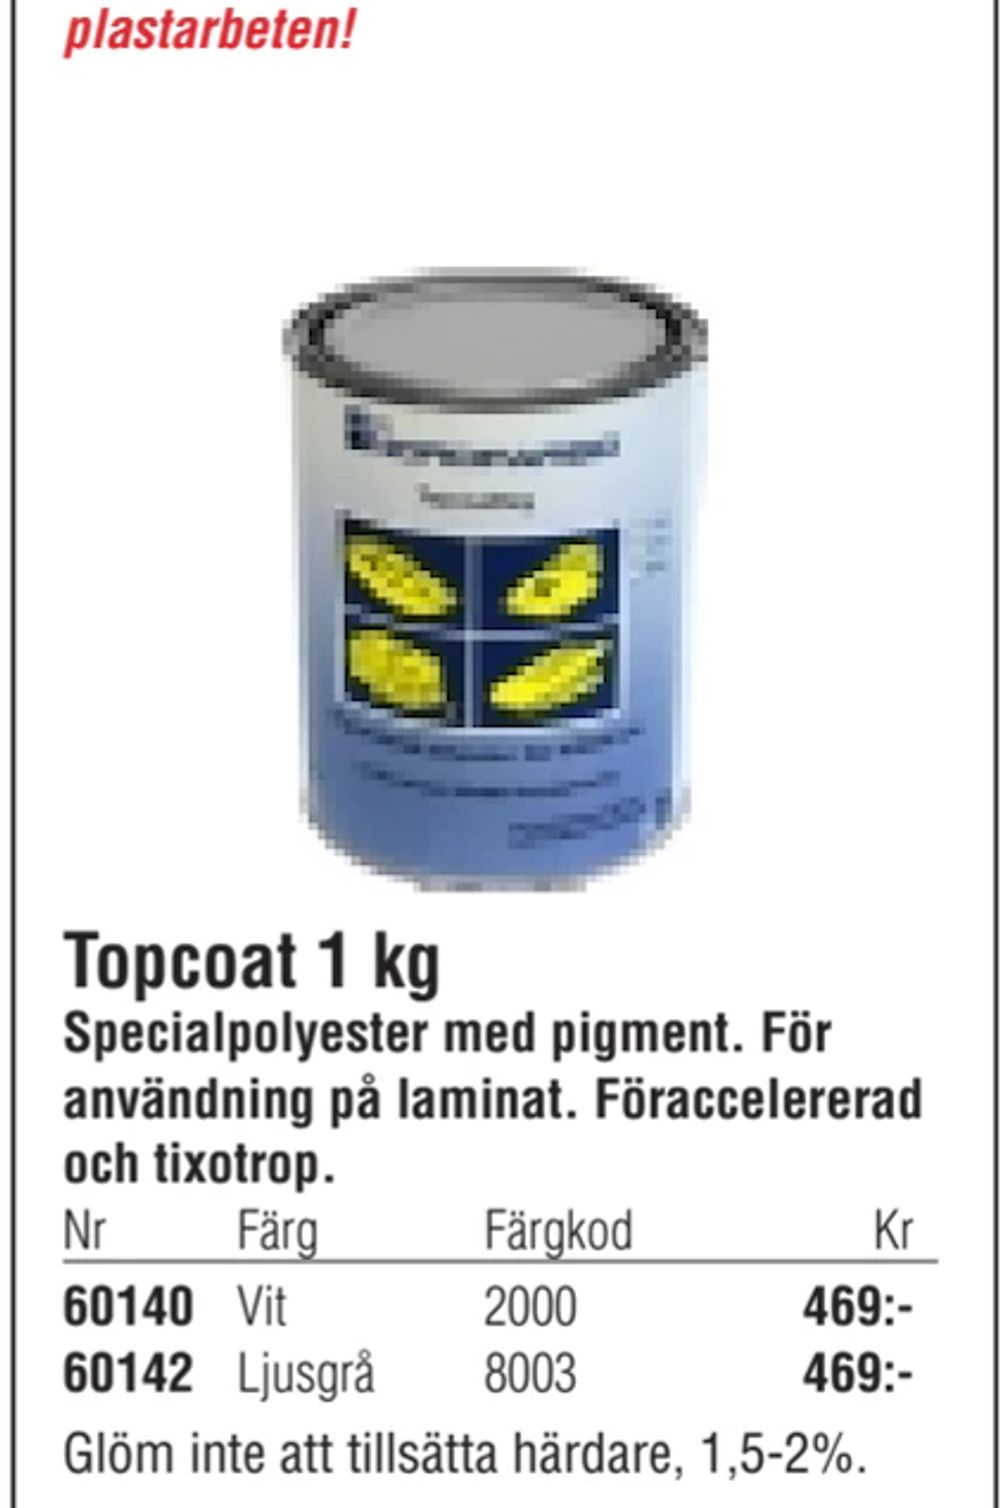 Erbjudanden på Topcoat 1 kg från Erlandsons Brygga för 469 kr